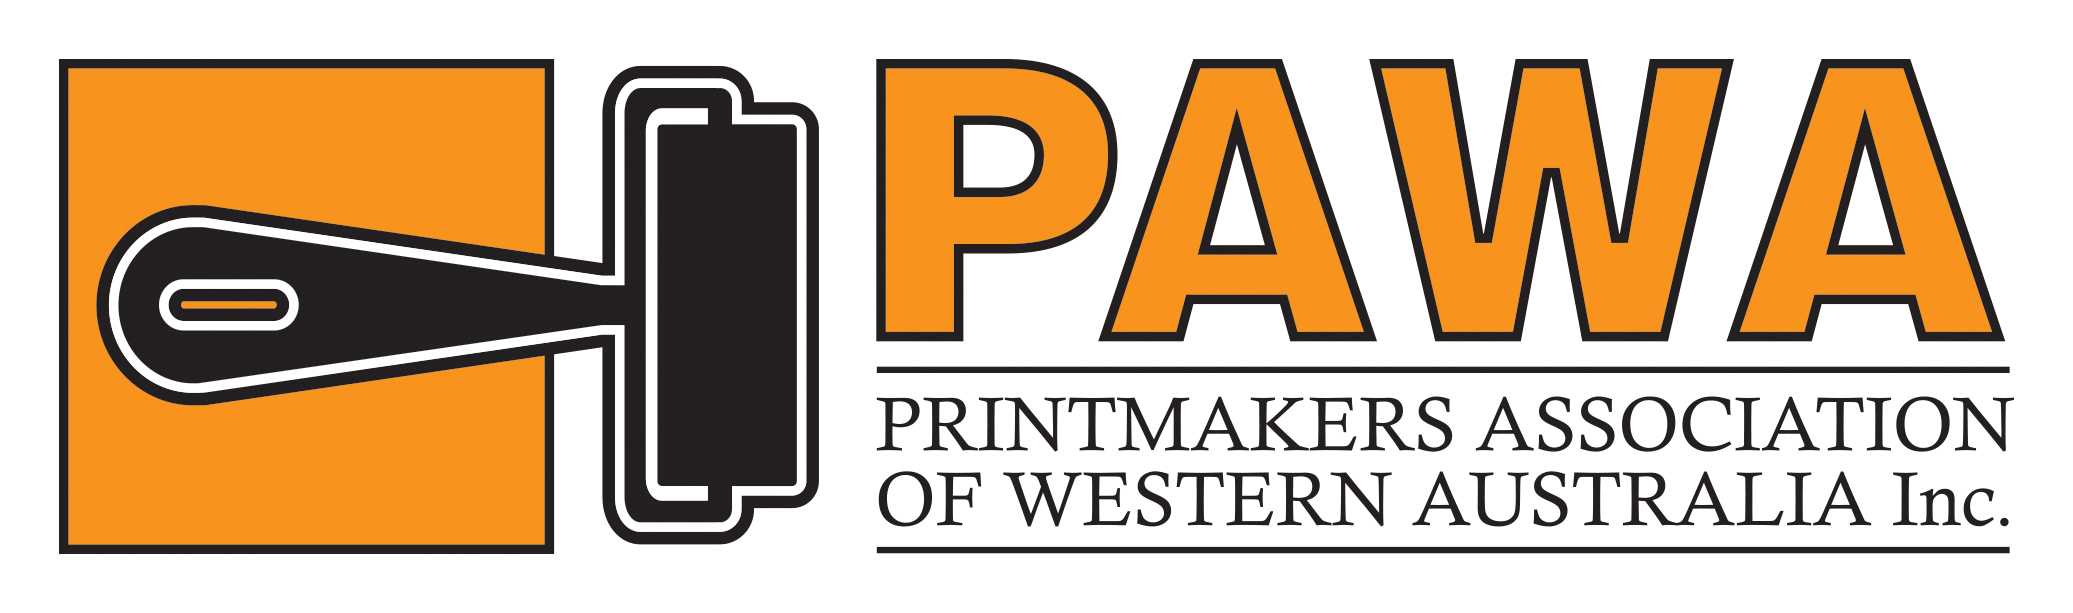 PAWA Logo 2016.jpg